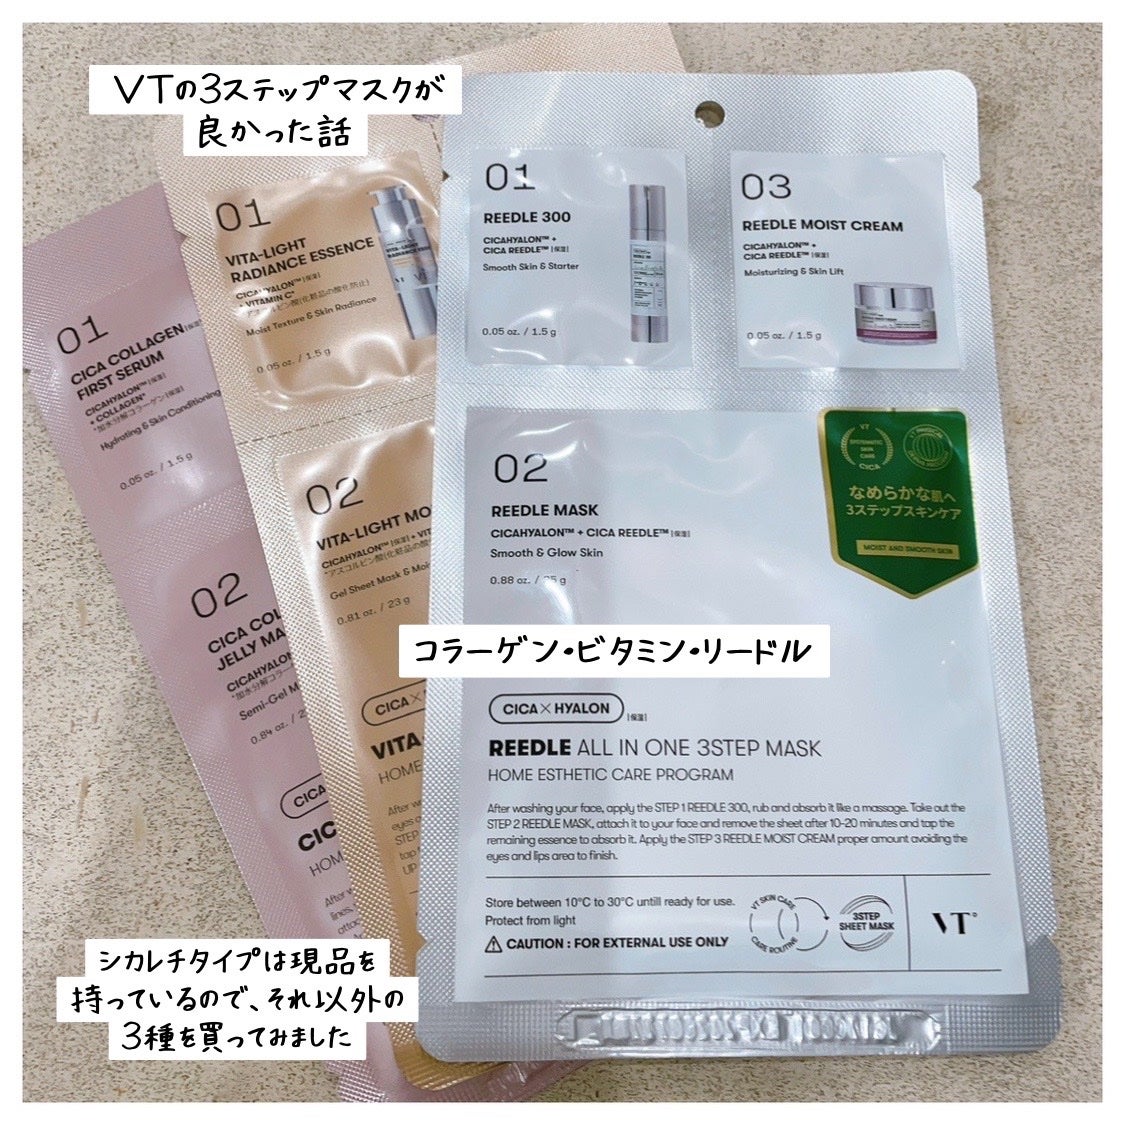 【新品未開封】VT リードルショットシリーズ肌弾力セラムセット&ビタライトマスク